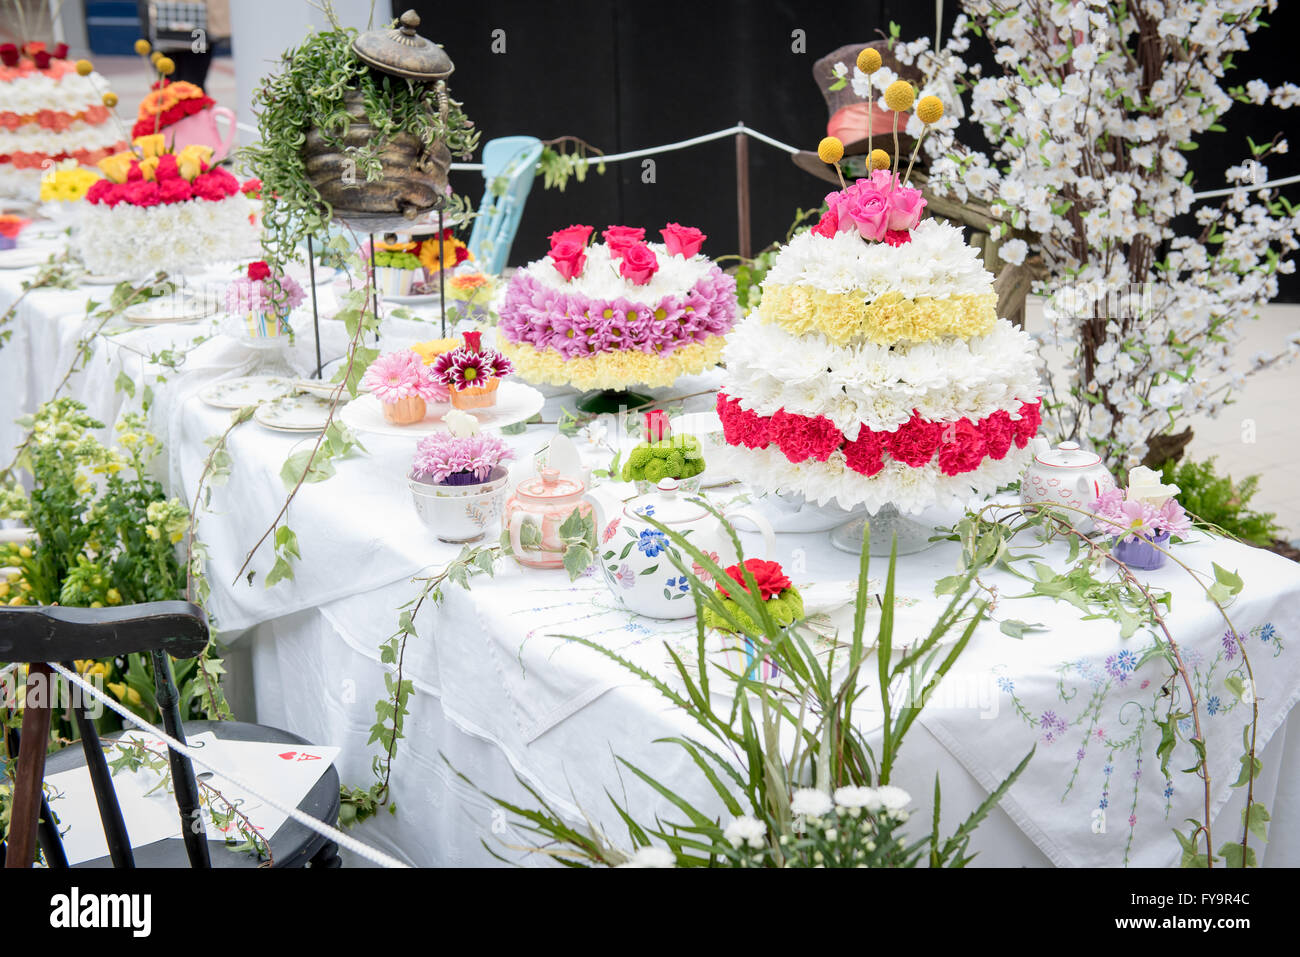 International - Le gâteau Sugarcraft décoration de gâteaux, pâtisseries et Show à Londres Banque D'Images